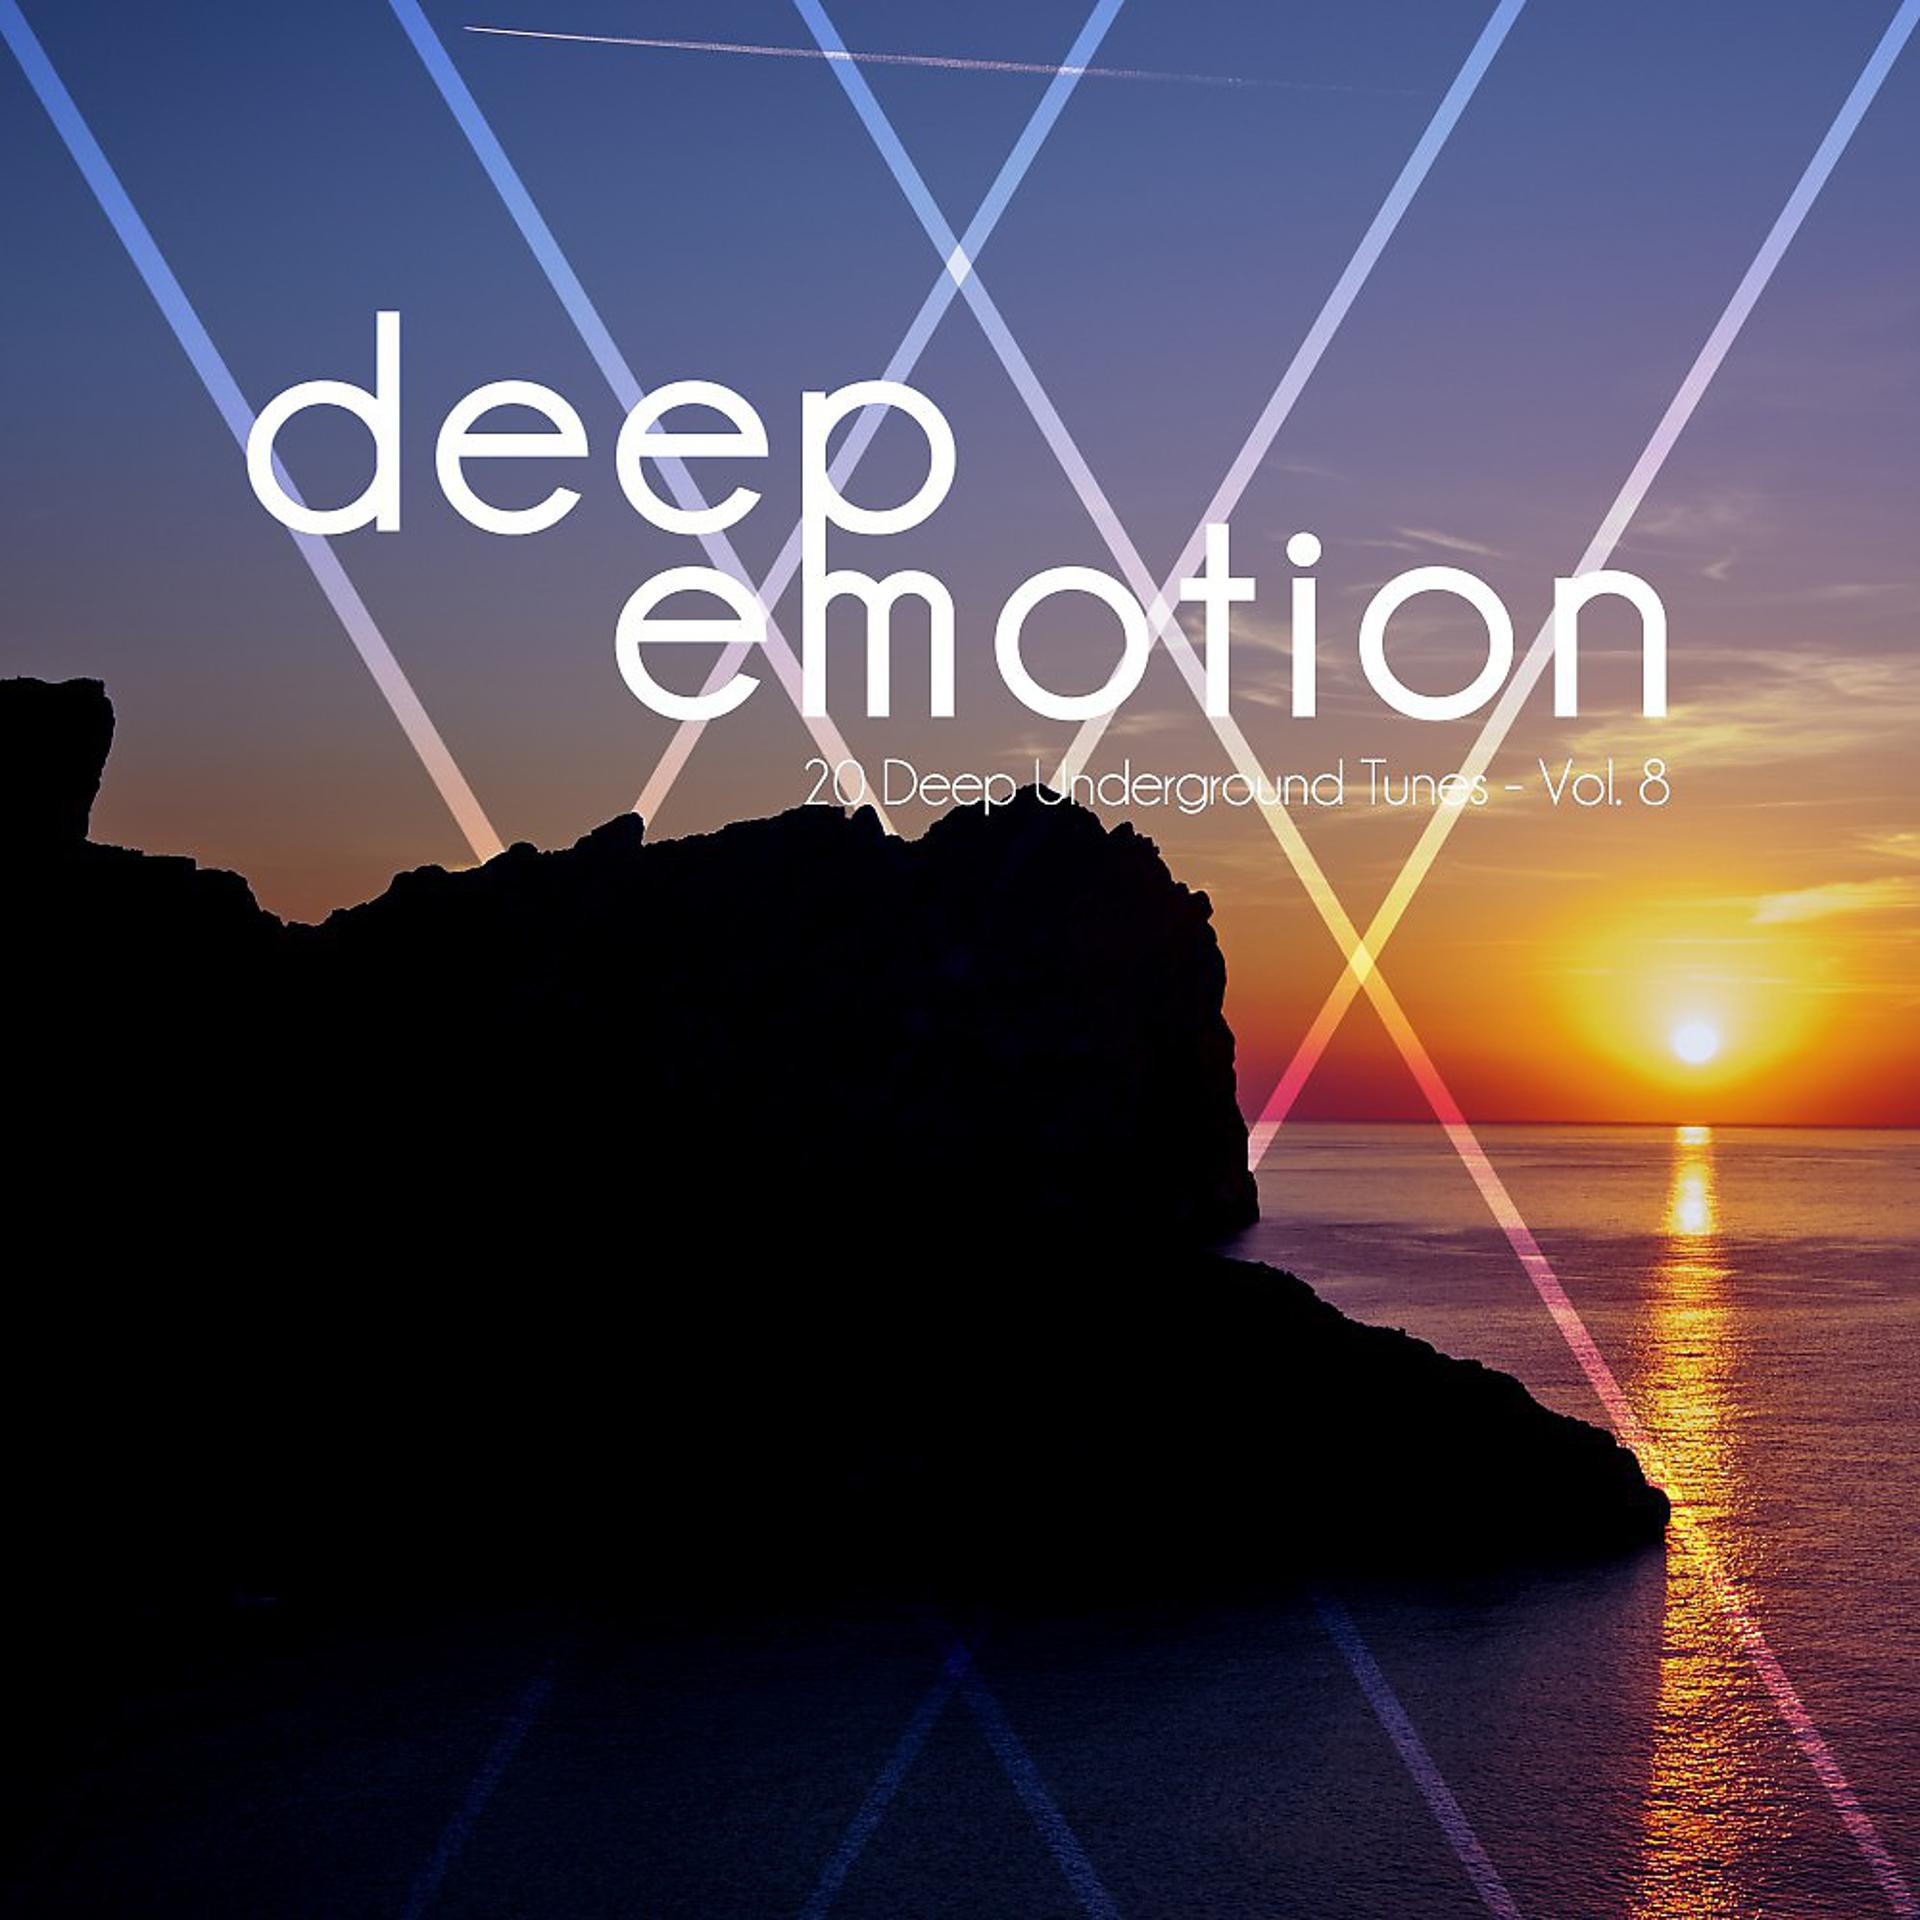 Постер альбома Deep Emotion (20 Deep Underground Tunes), Vol. 8